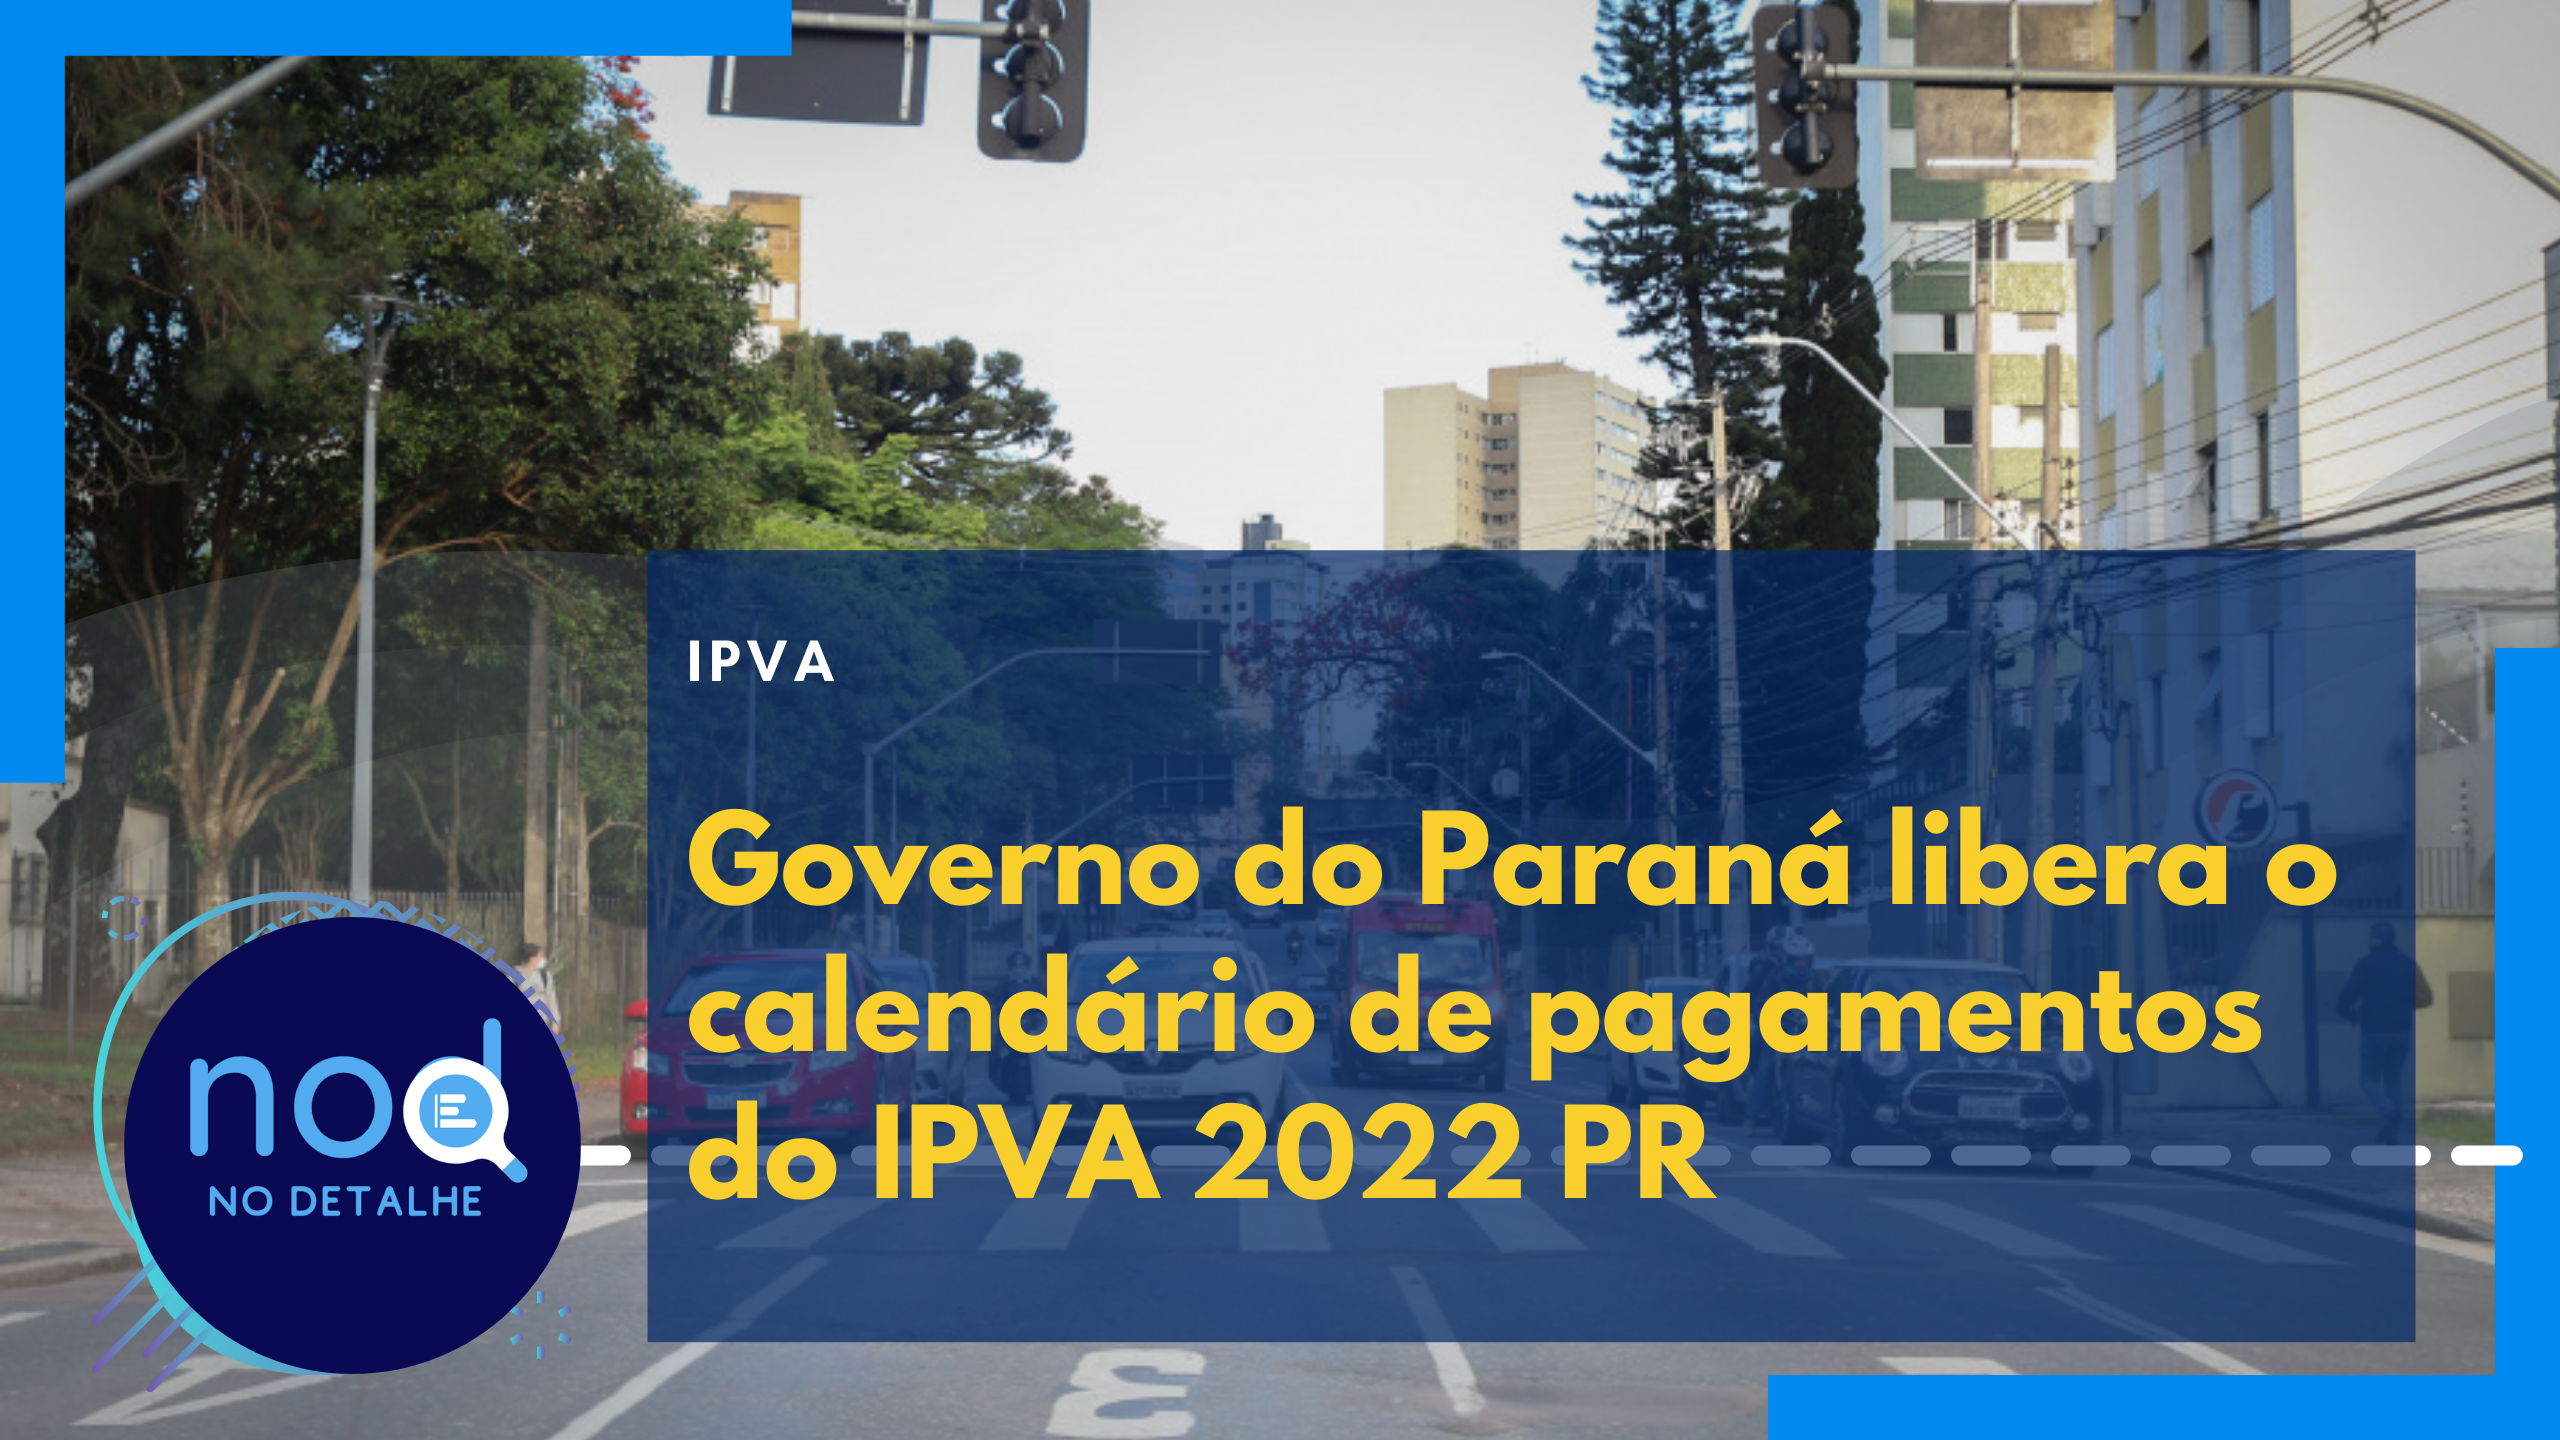 IPVA 2022 PR: Calendário divulgado. Governo mantém pagamento em até 5 vezes